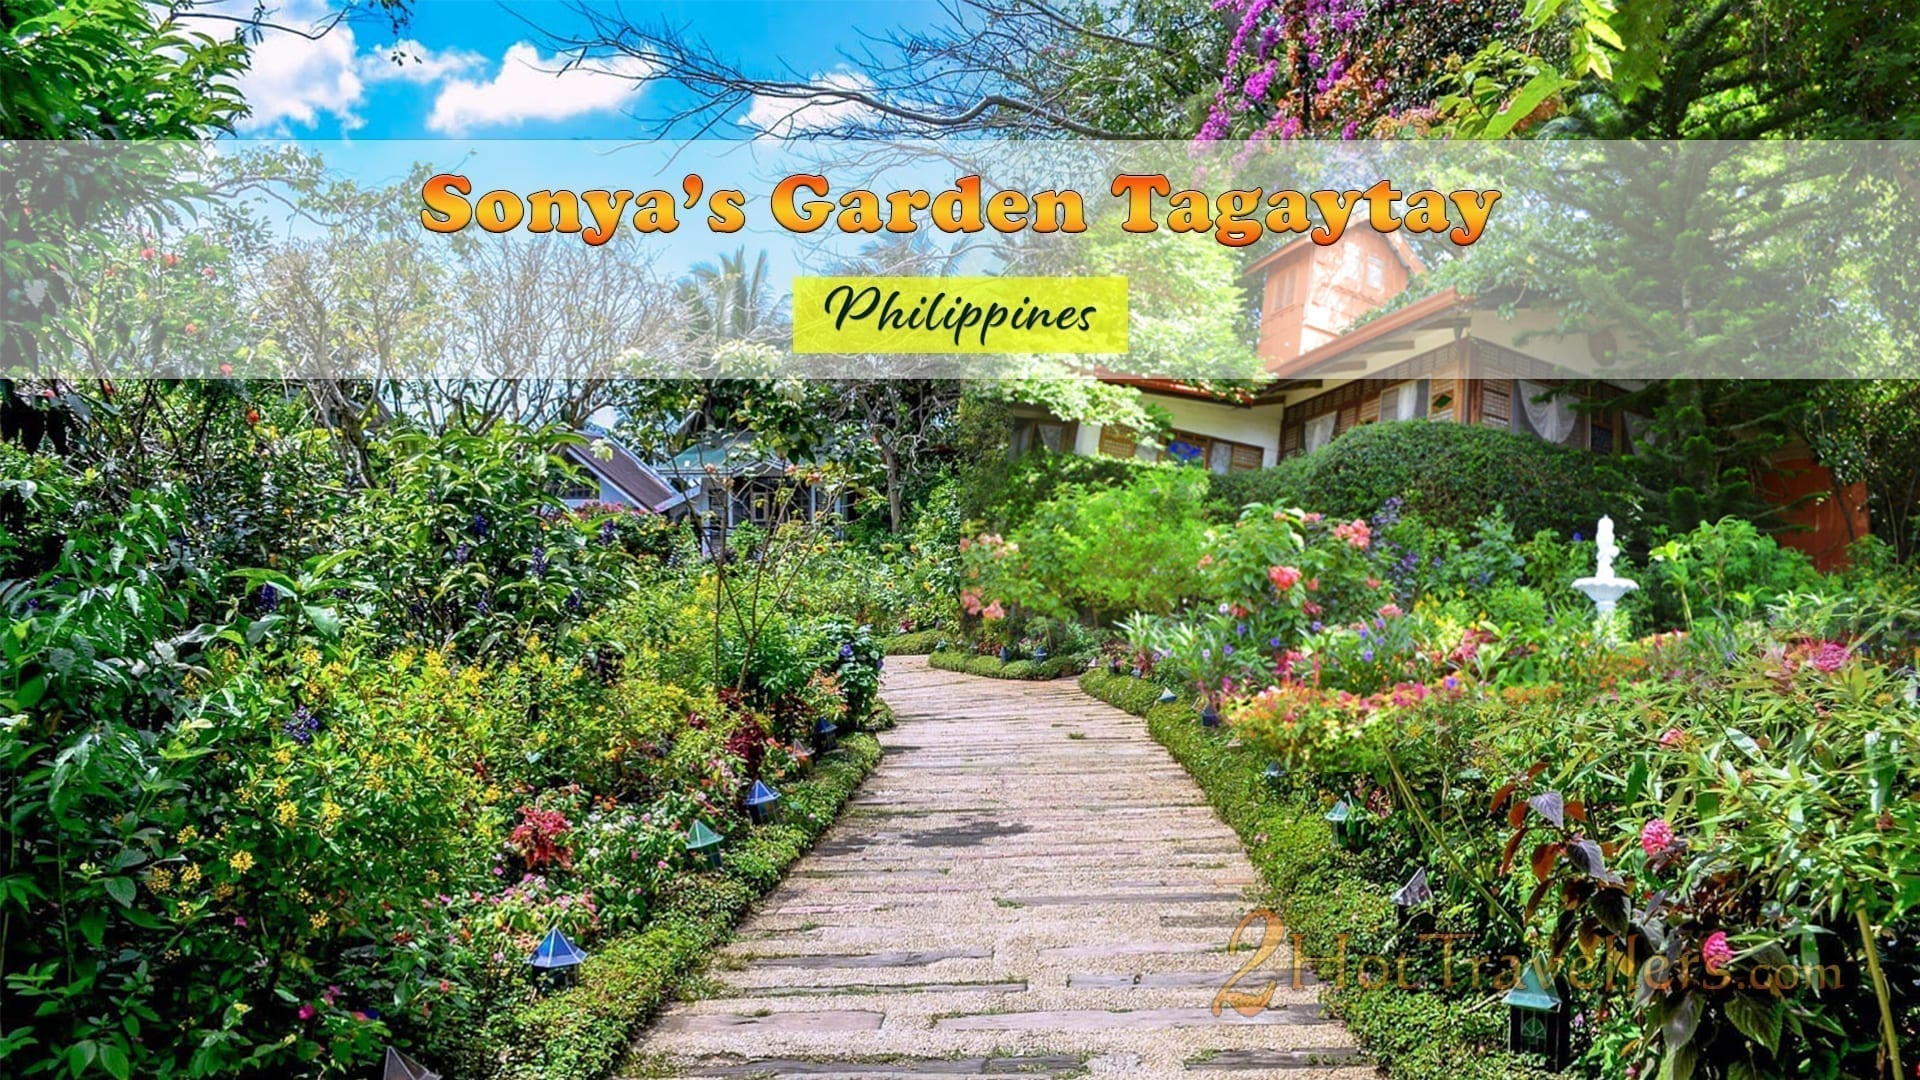 onya's Garden Tagaytay